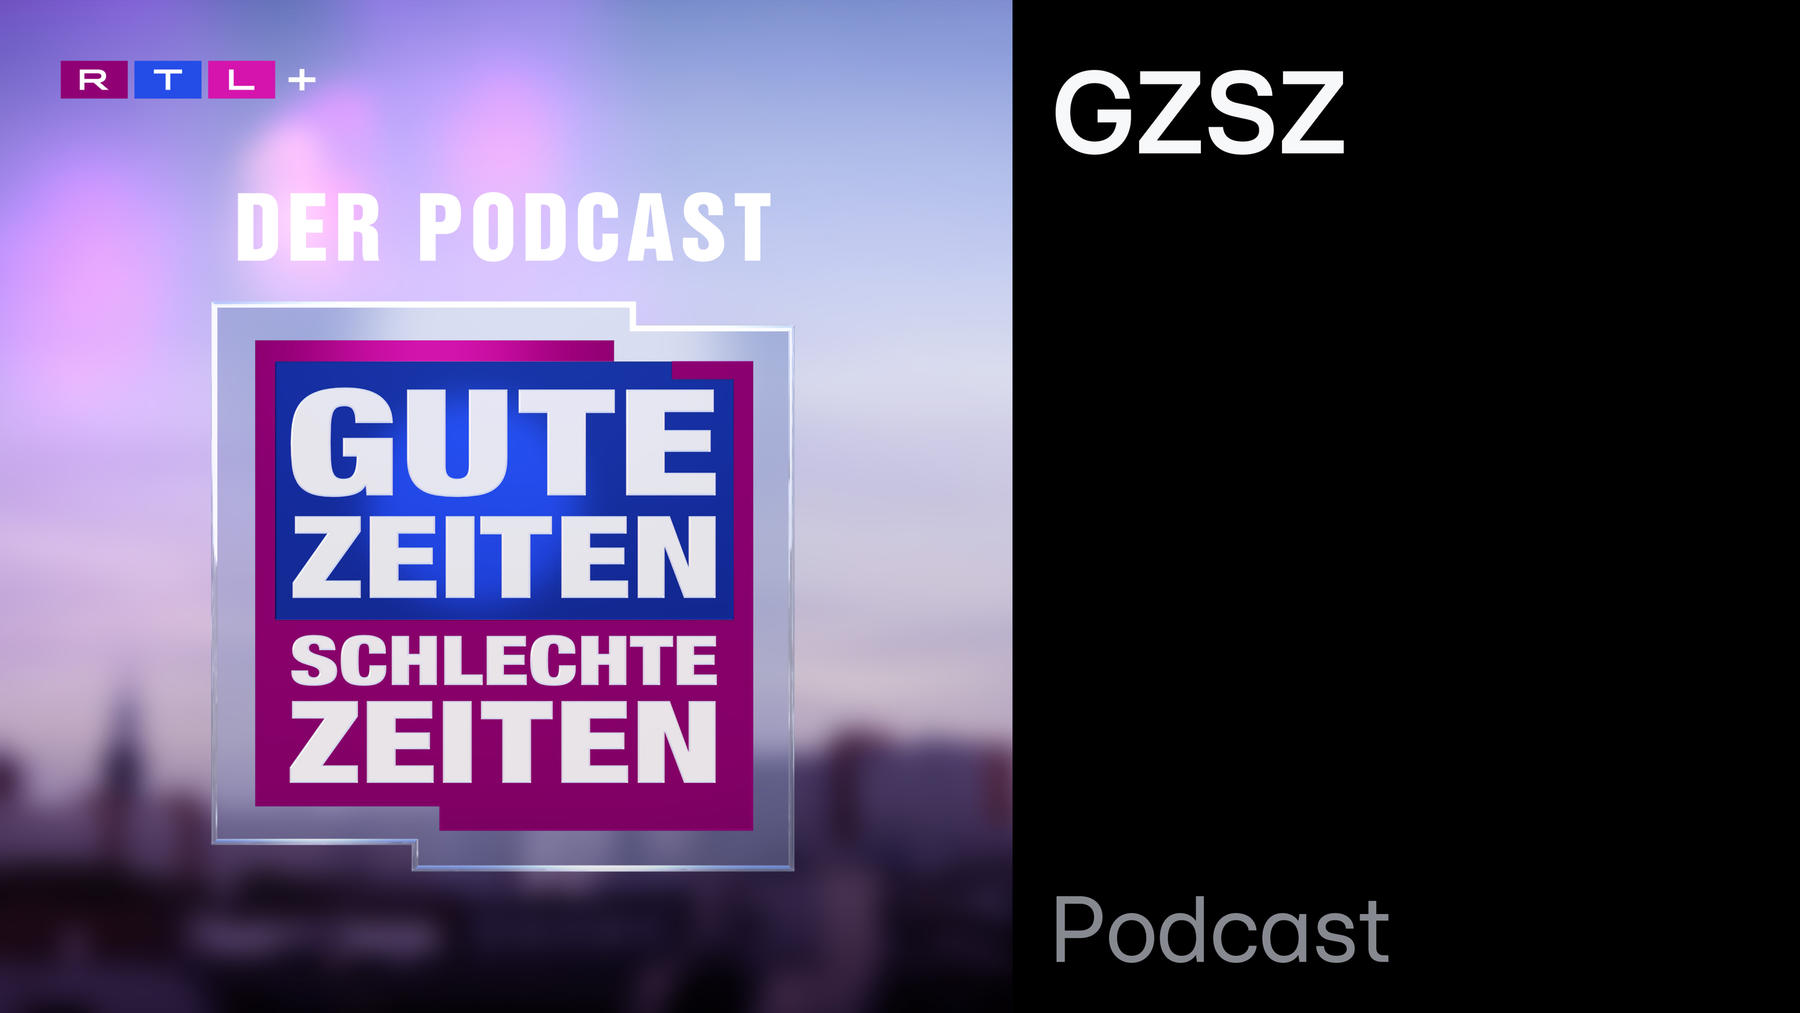 Podcast: GZSZ